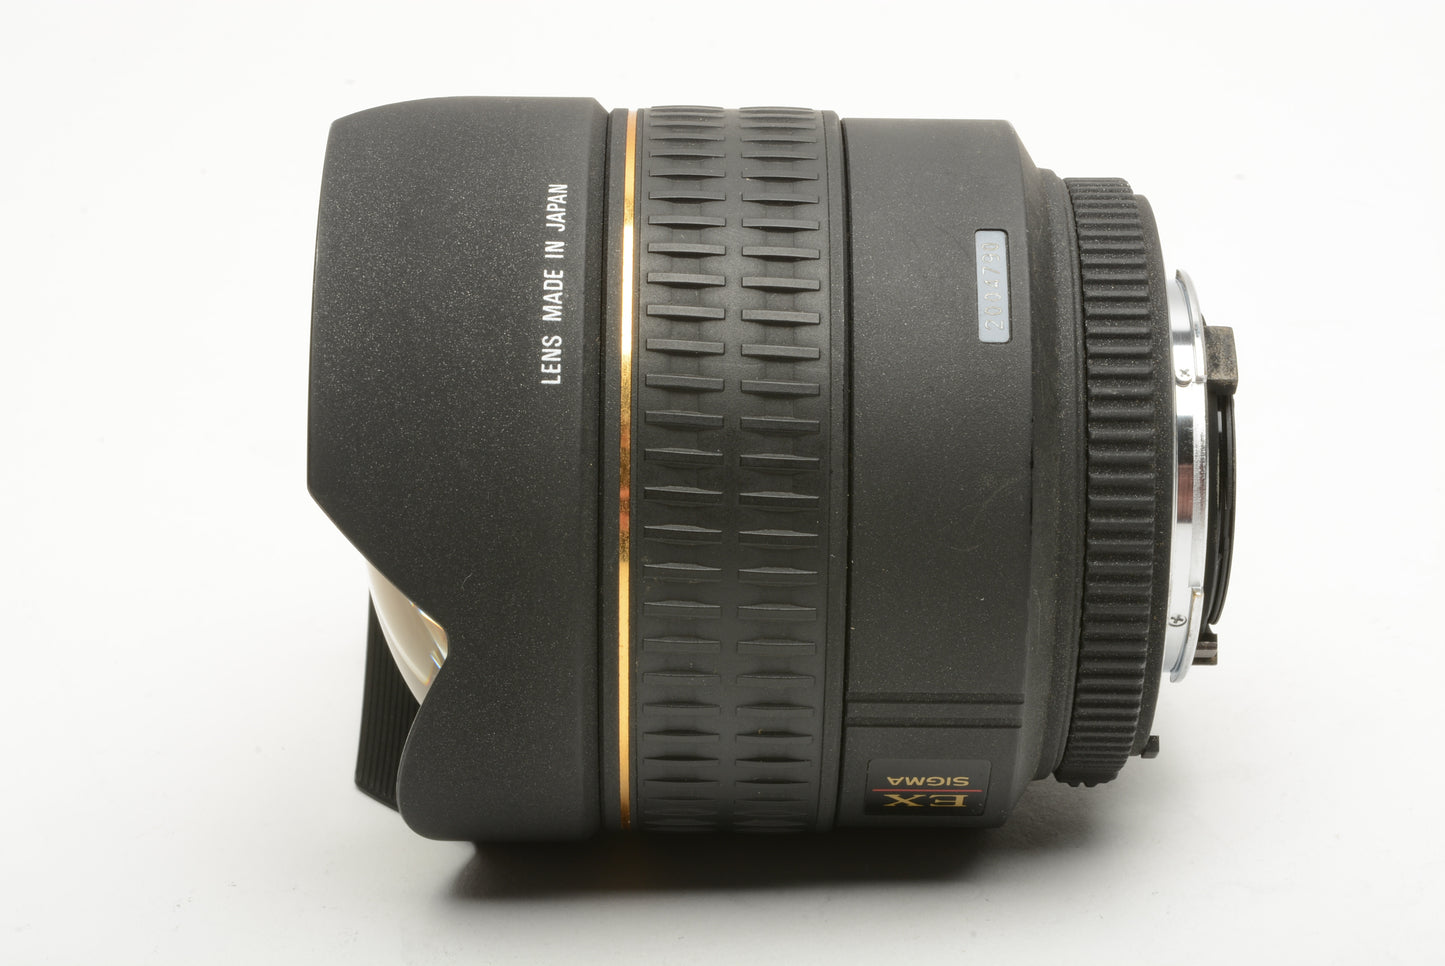 Sigma AF 14mm f2.8D Aspherical lens for Nikon, caps, hood, sharp!